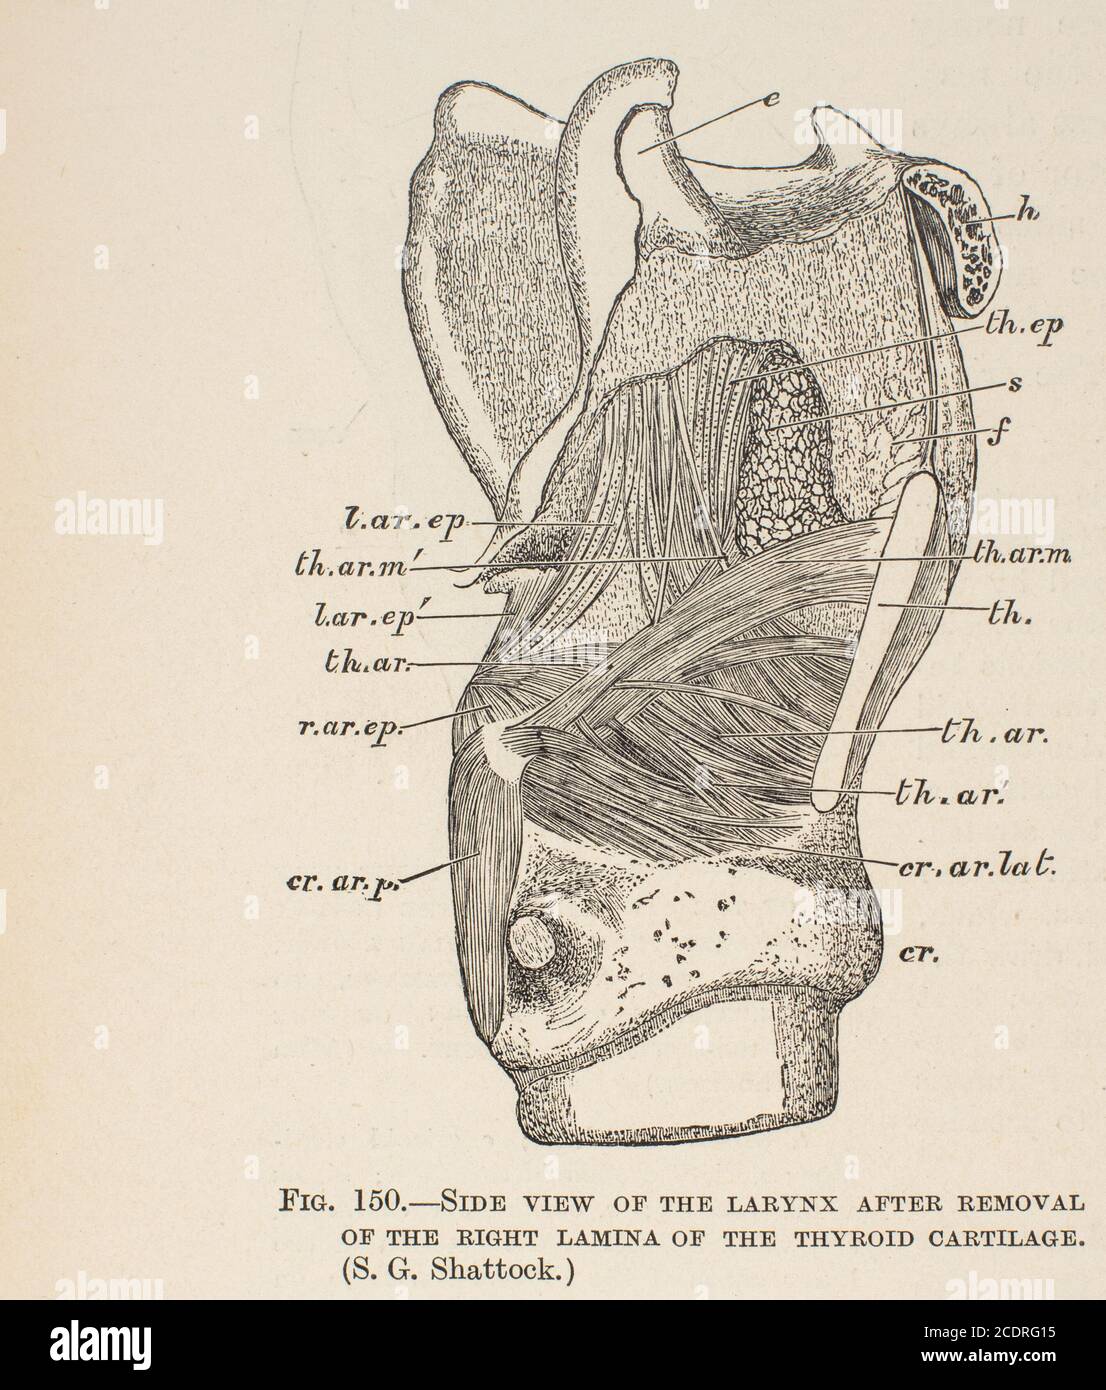 Elementi di anatomia di Quain col. III pubblicato nel 1896, laringe. Foto Stock